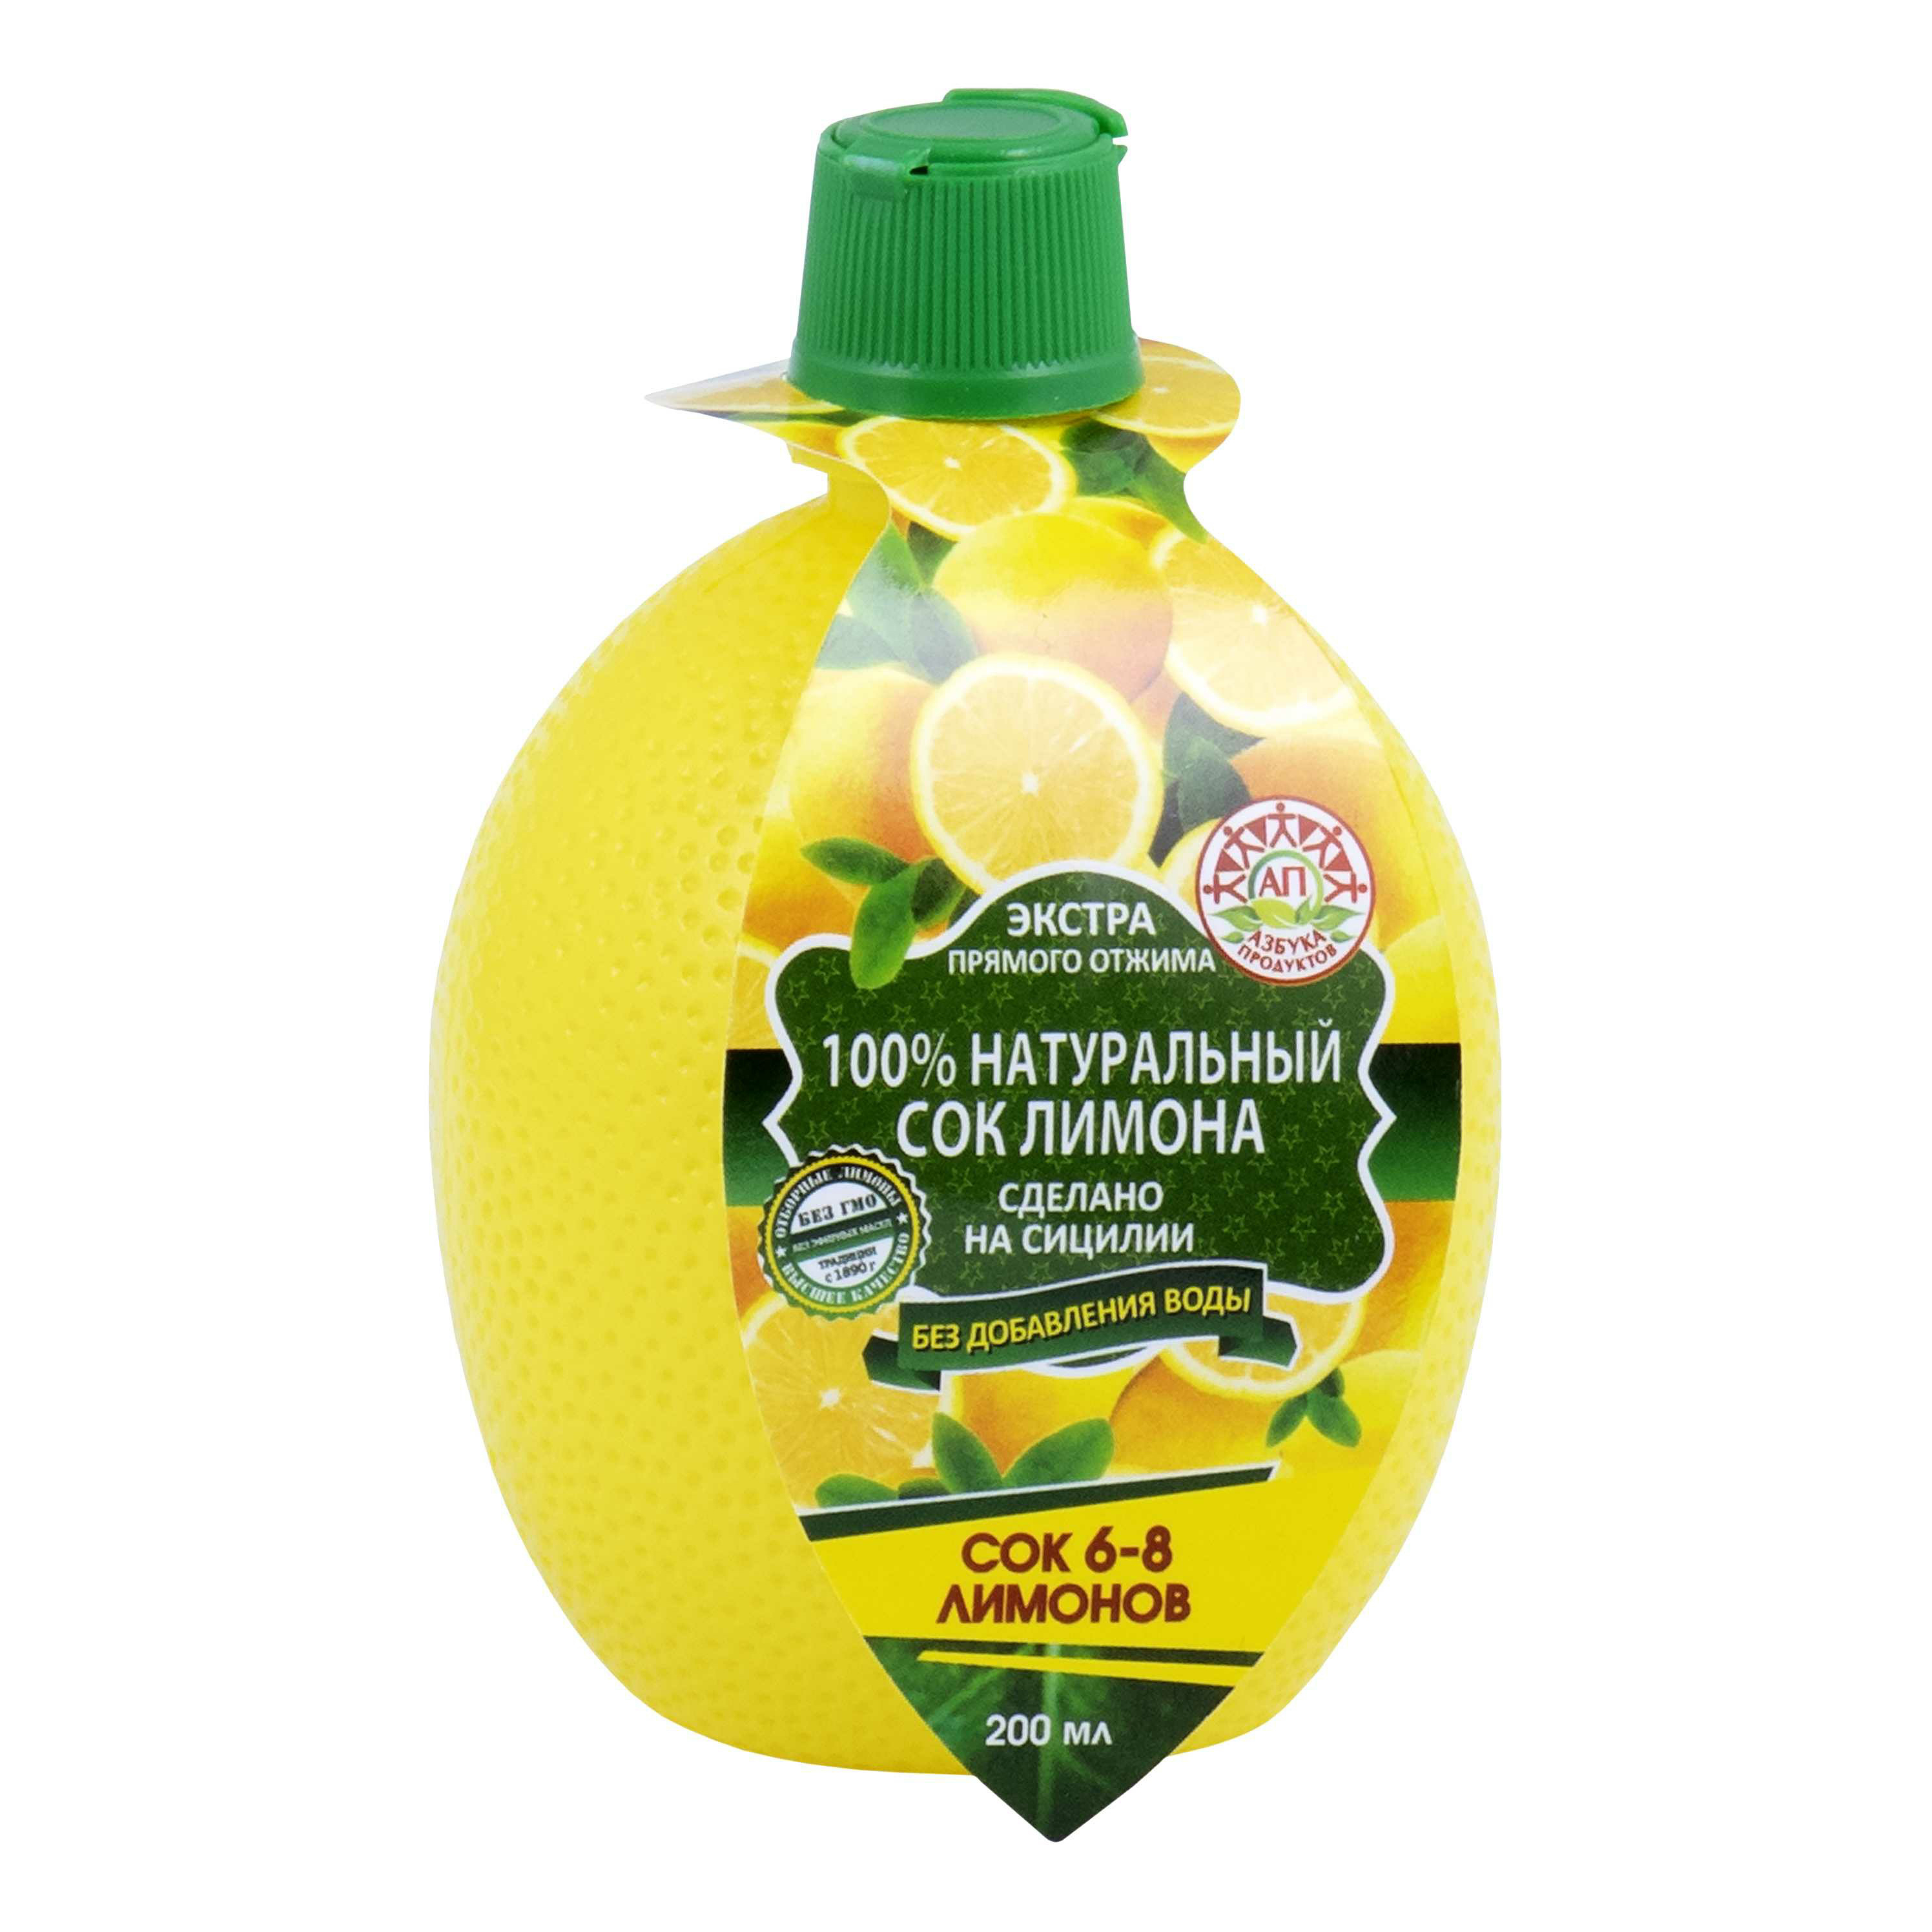 Cок лимона Азбука продуктов натуральный без воды 200 мл